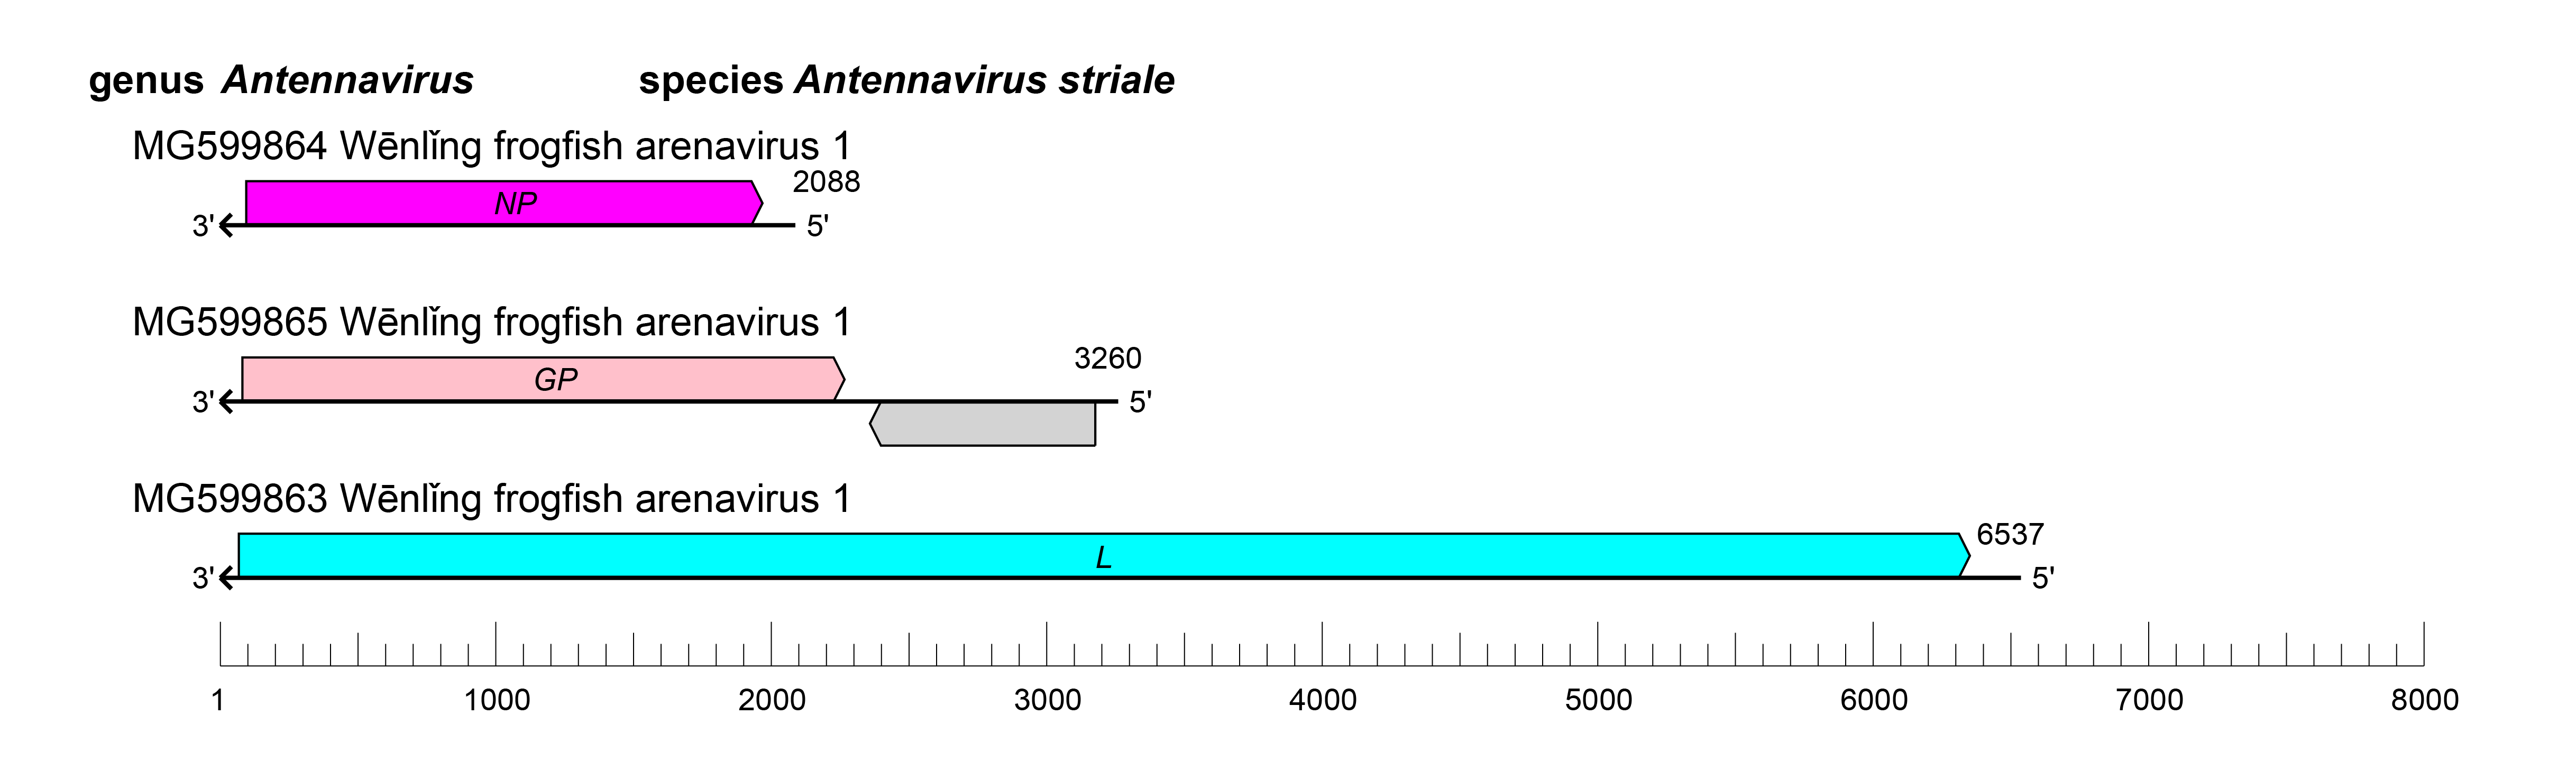 Antennavirus genome organisation